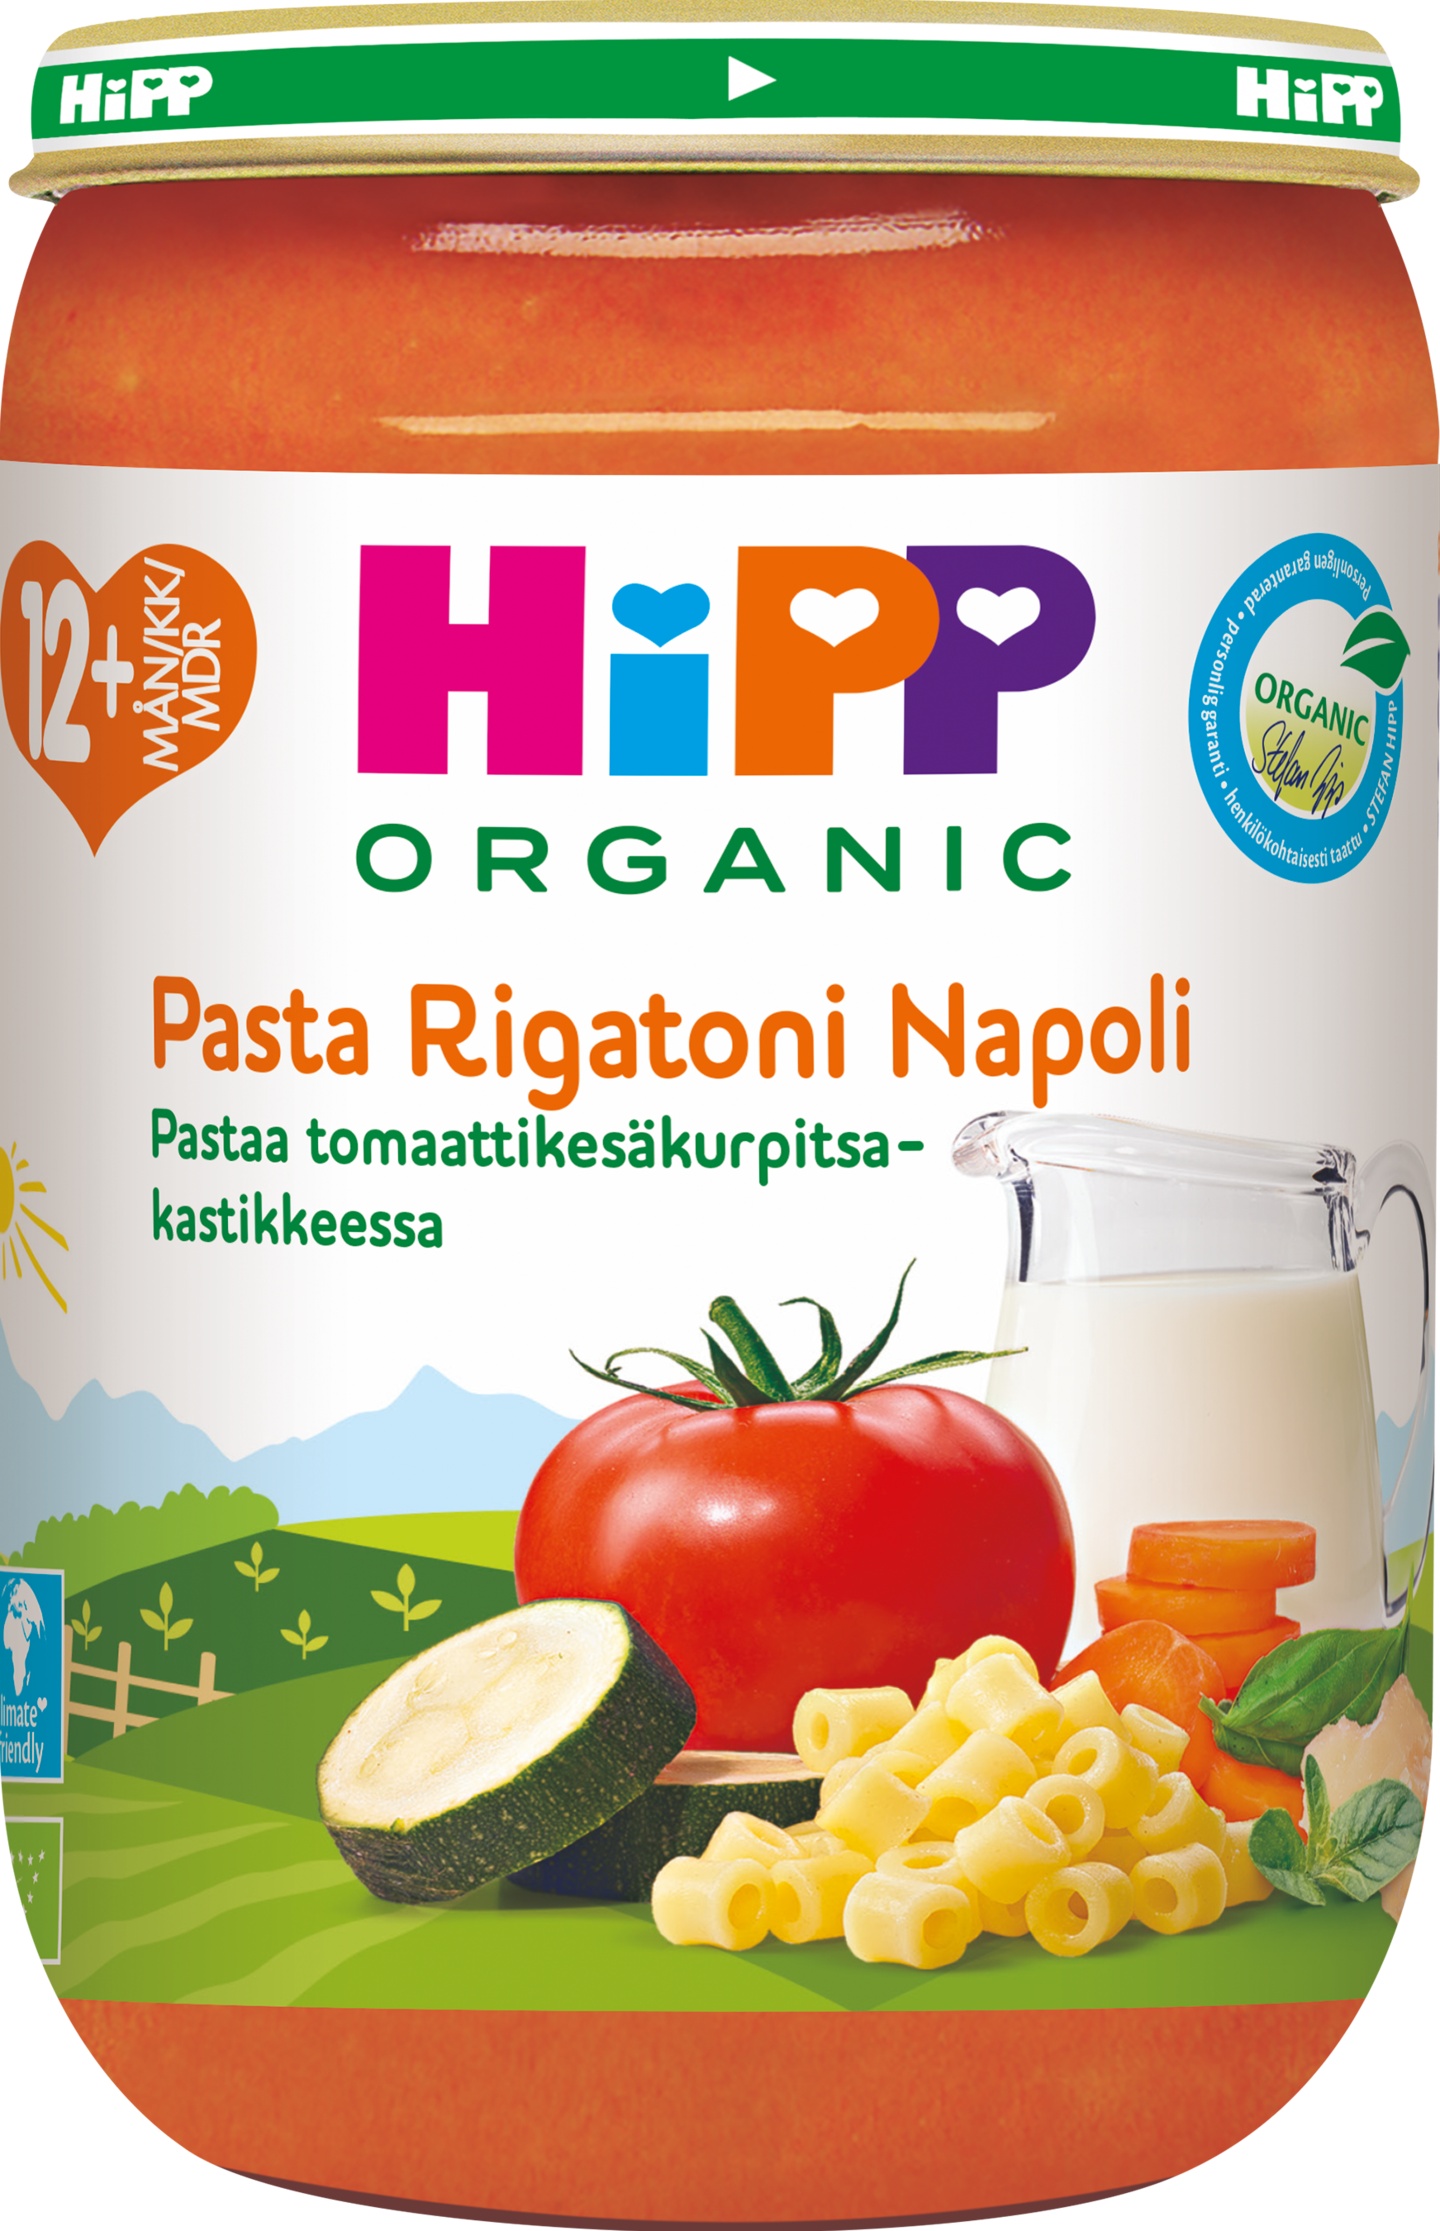 HIPP pasta tomatti-kesäkurpitsa -kastikkeessa  220g 12kk luomu